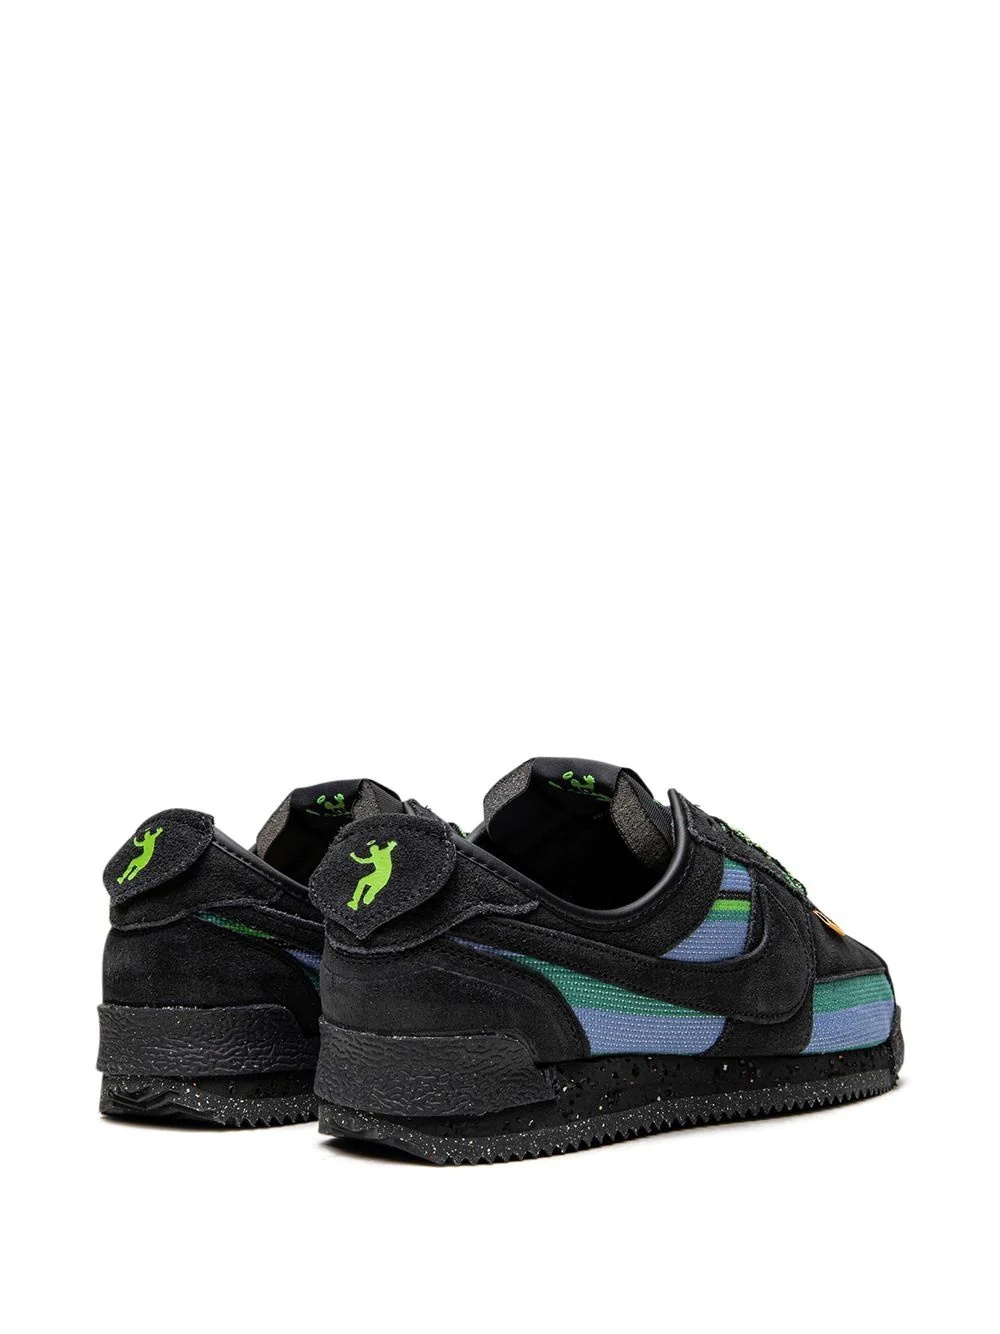 x Union Cortez "Black/Blue" sneakers - 3